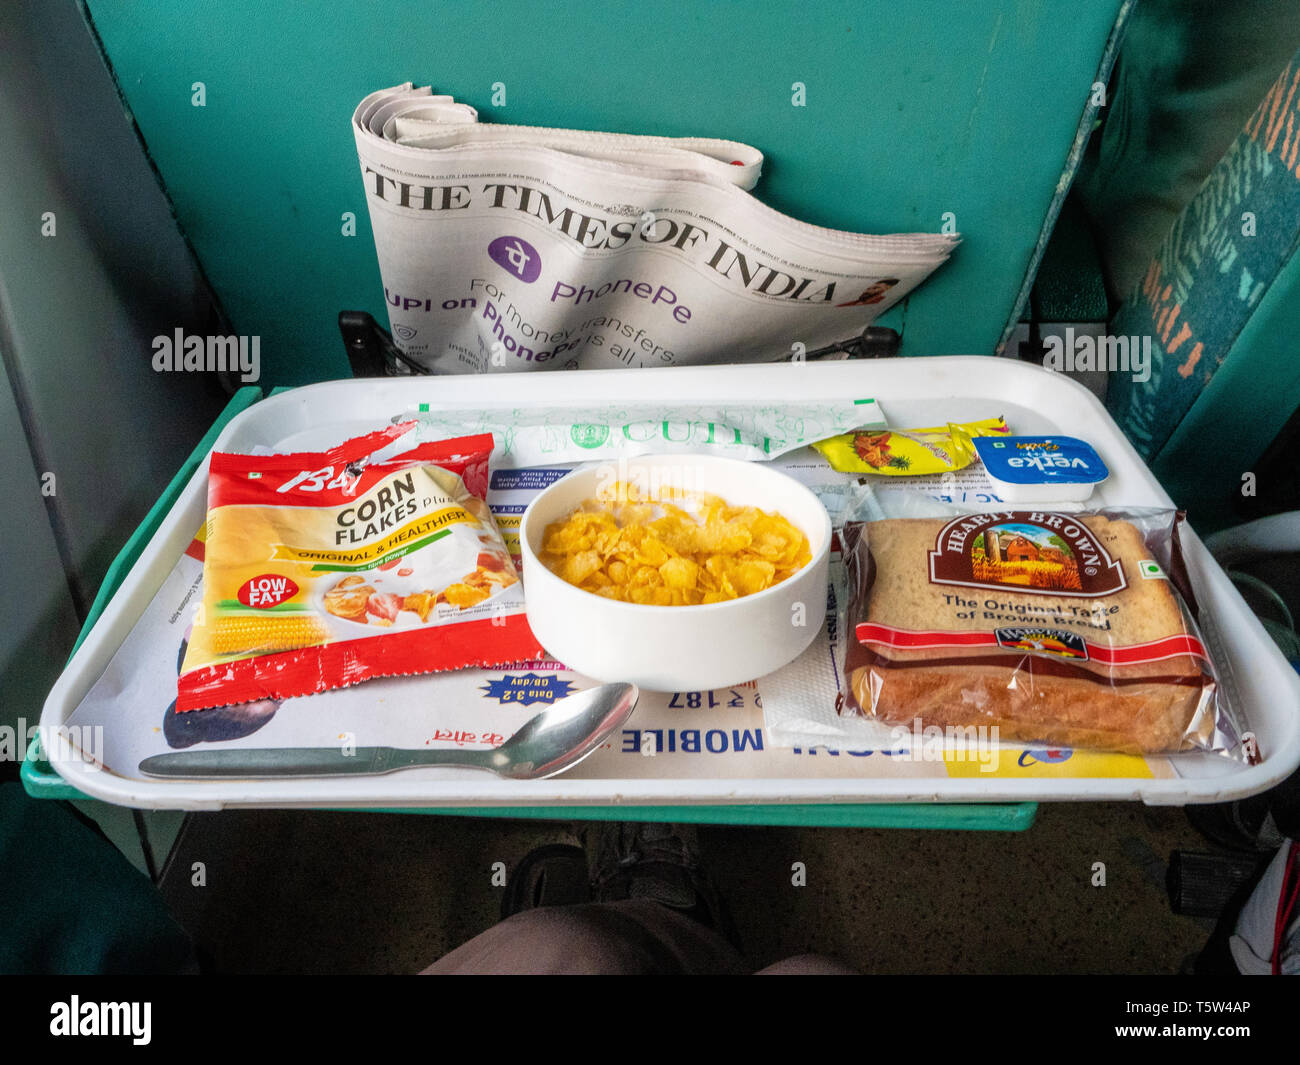 Siège de première classe sur les chemins de fer indiens express avec une copie de l'Indian Times et petit déjeuner avec des flocons de maïs grillé et empaqueté Banque D'Images